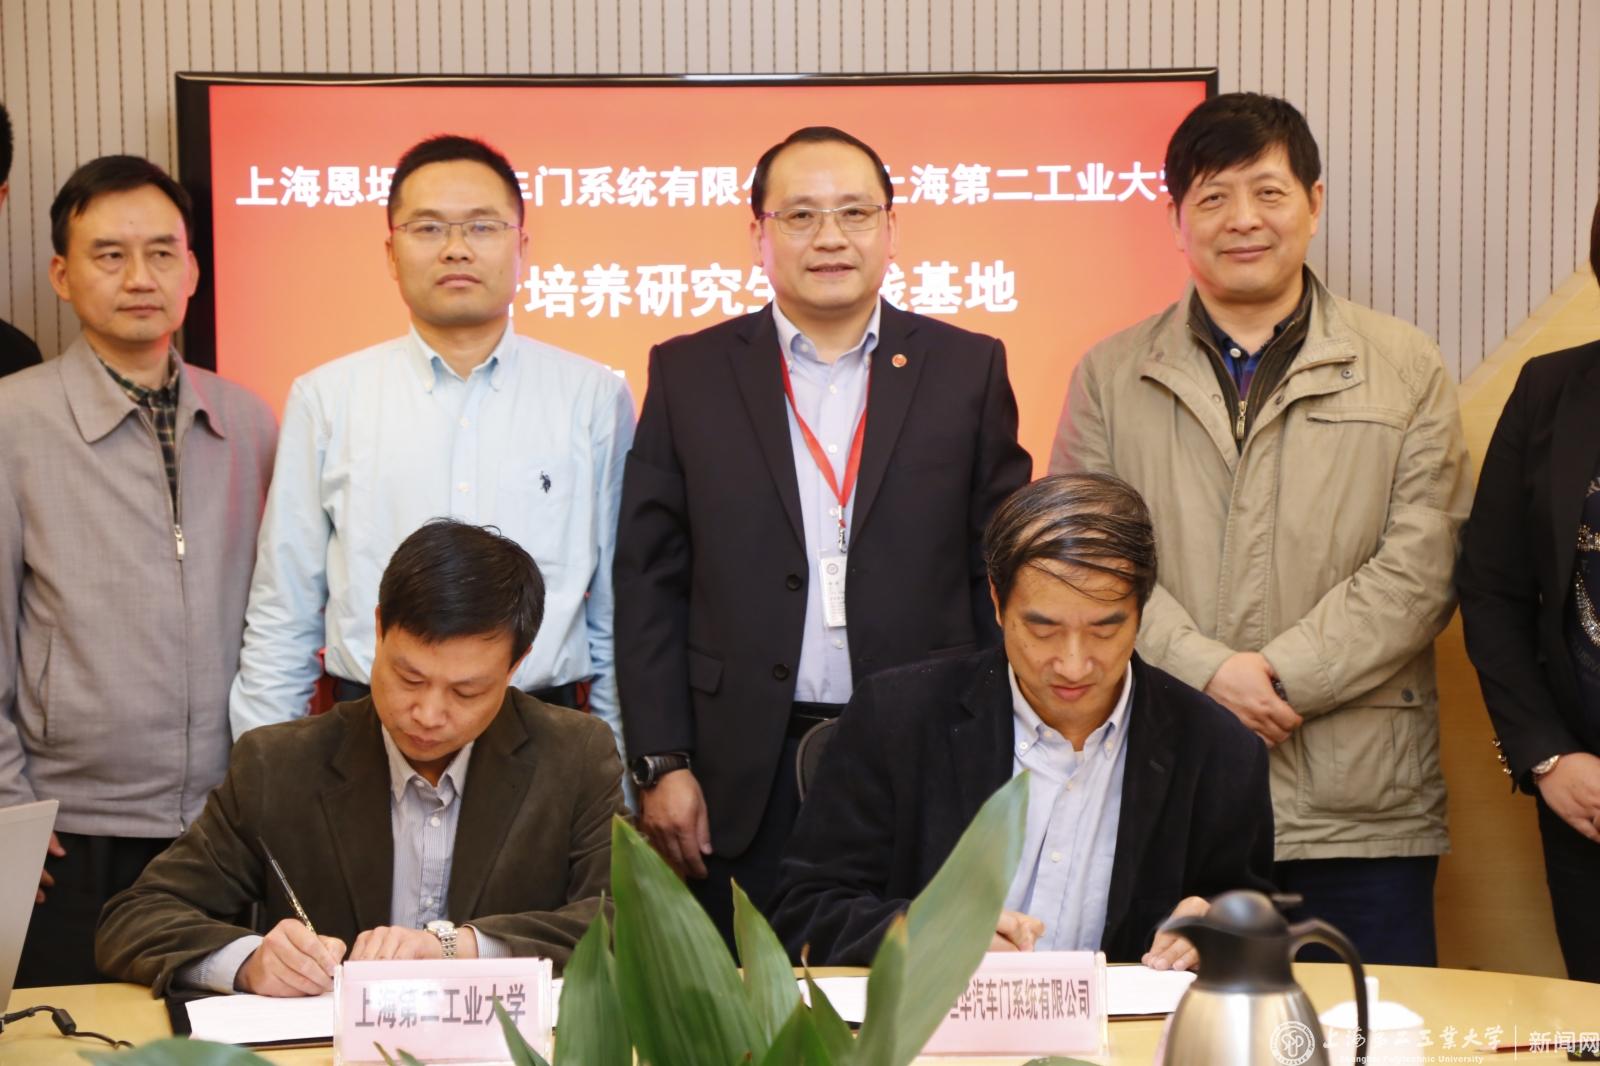 谢华清副校长、卢为民总经理分别代表合作双方在协议上签字